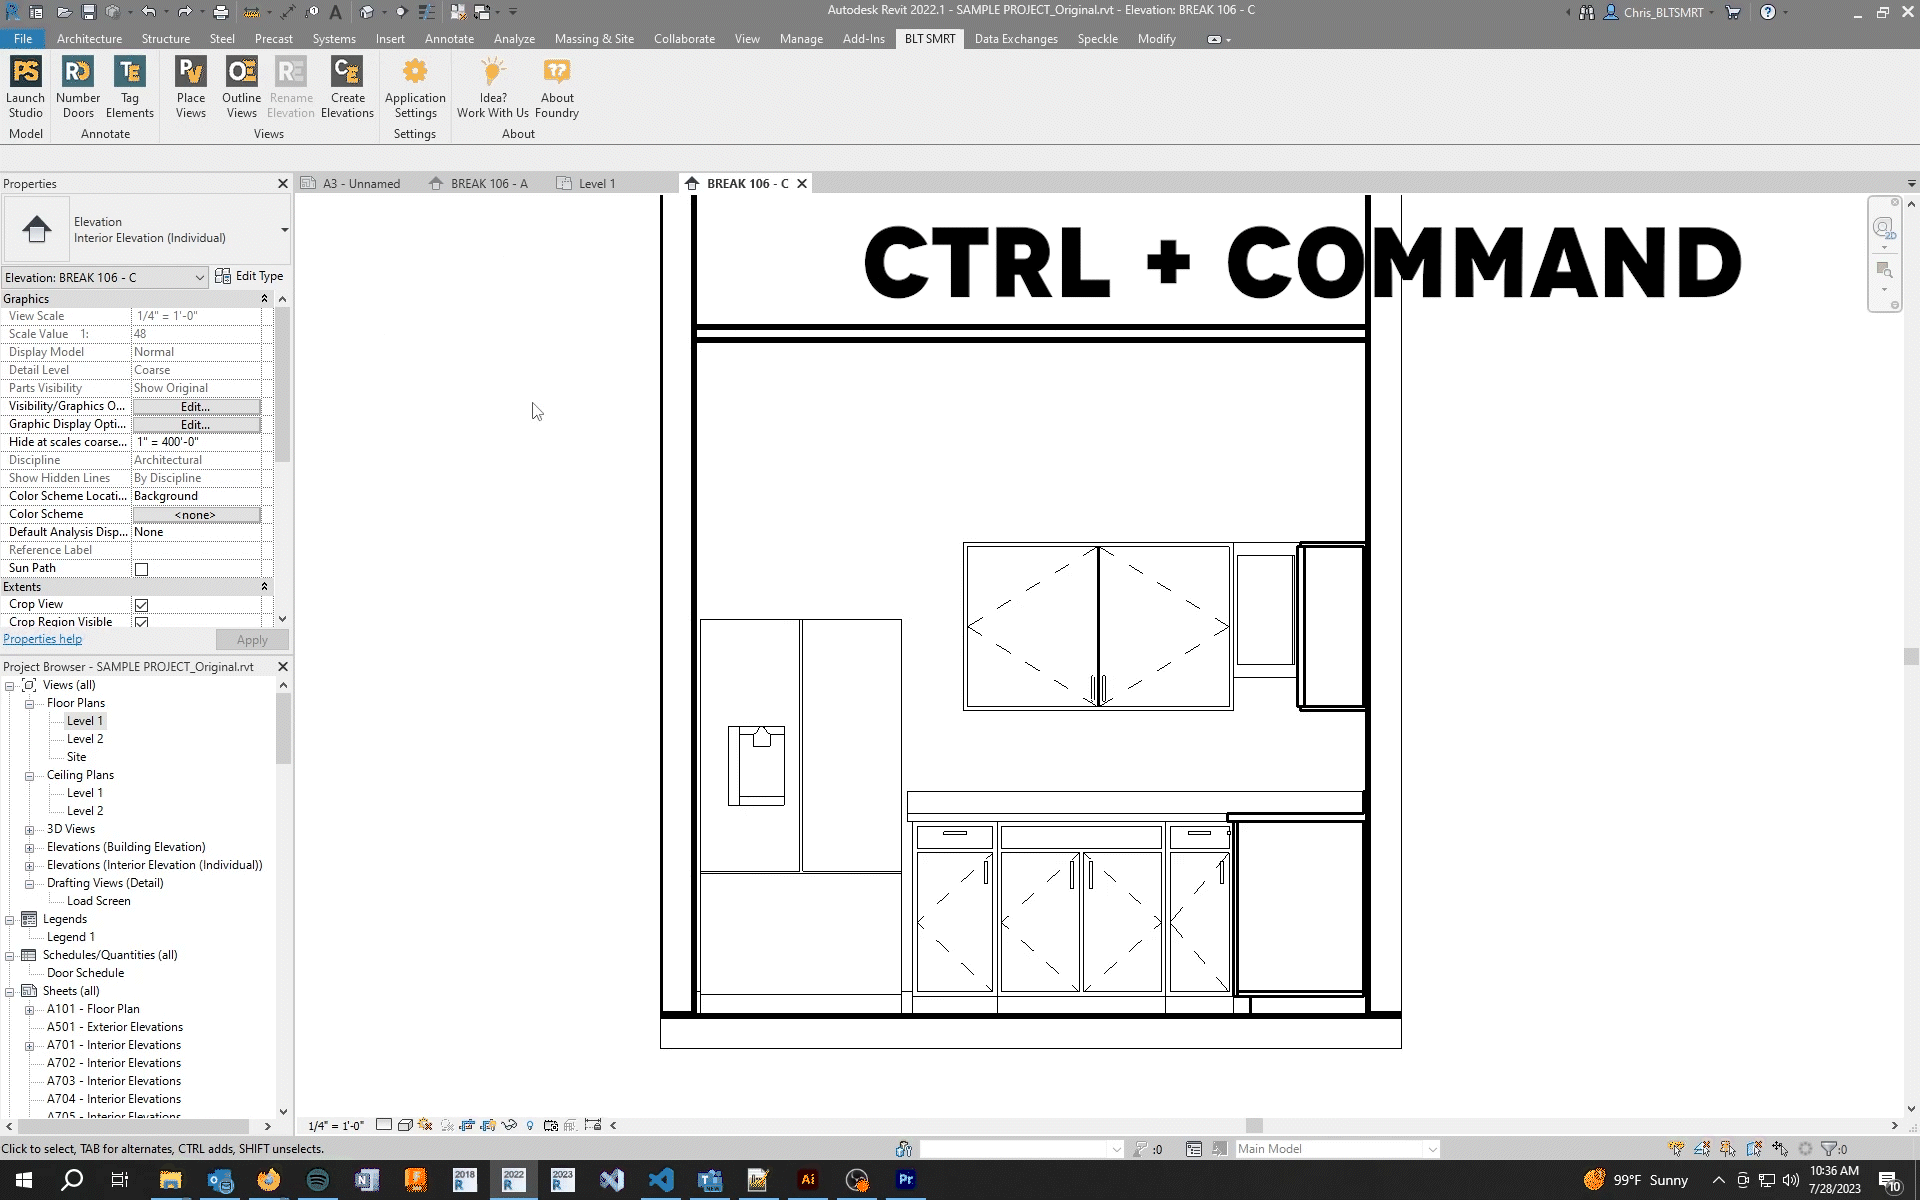 Control Command Shortcut